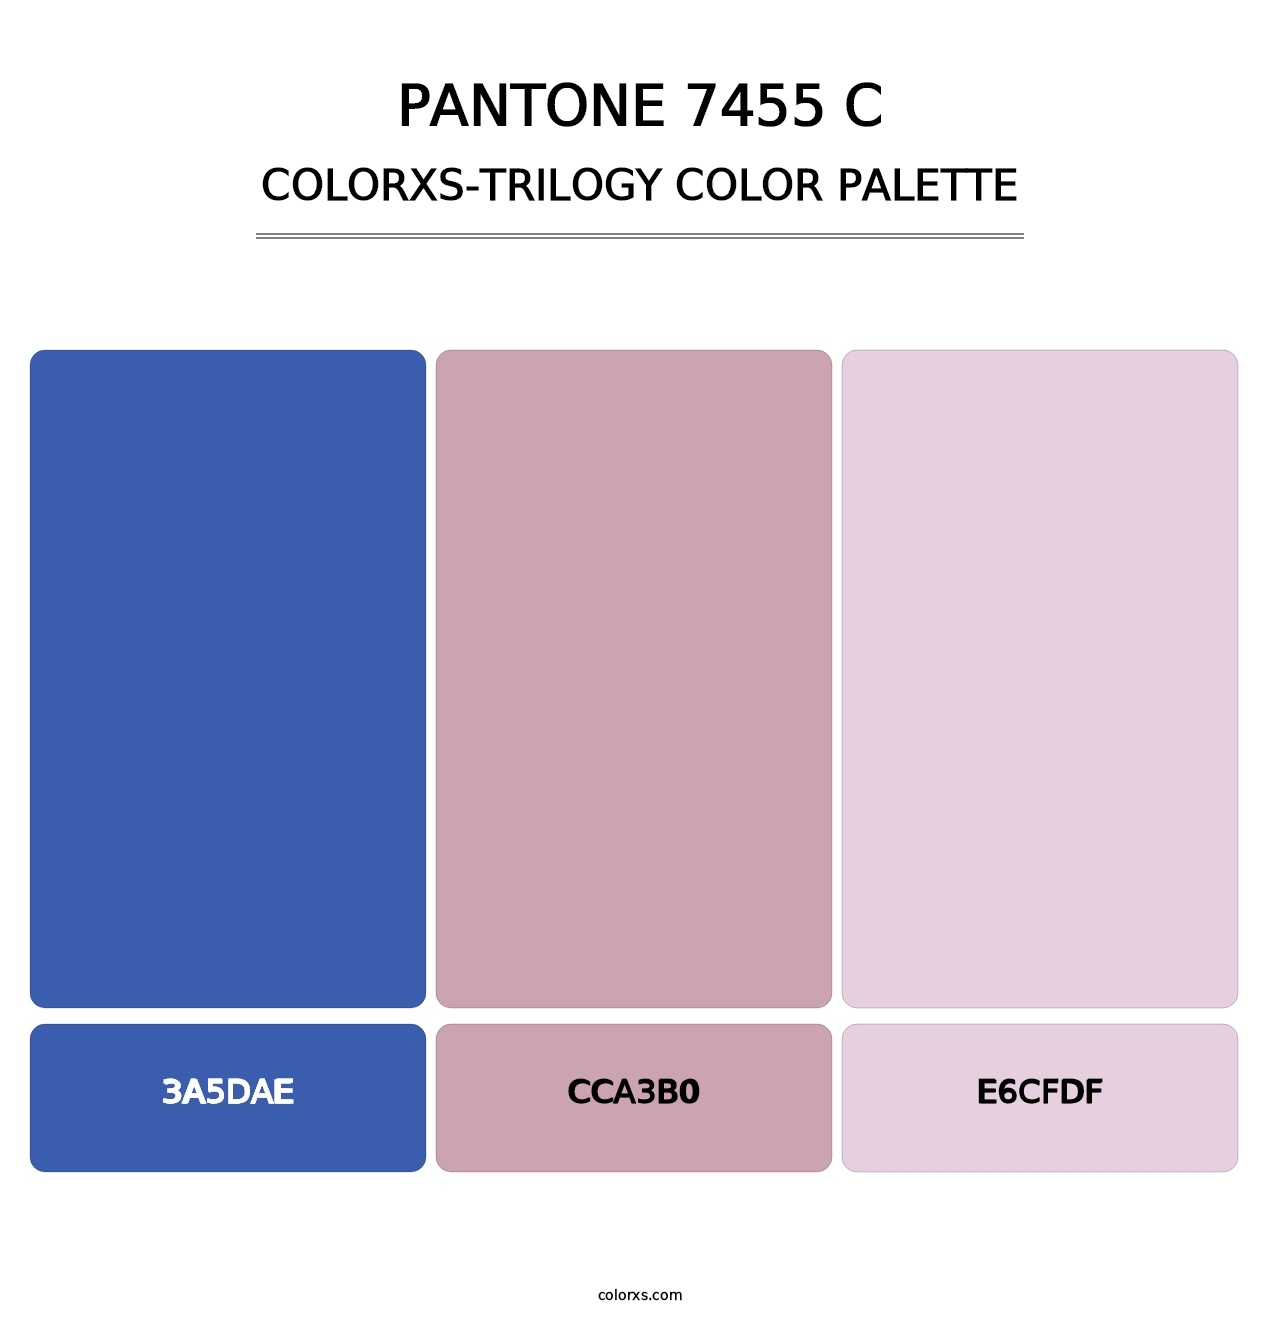 PANTONE 7455 C - Colorxs Trilogy Palette